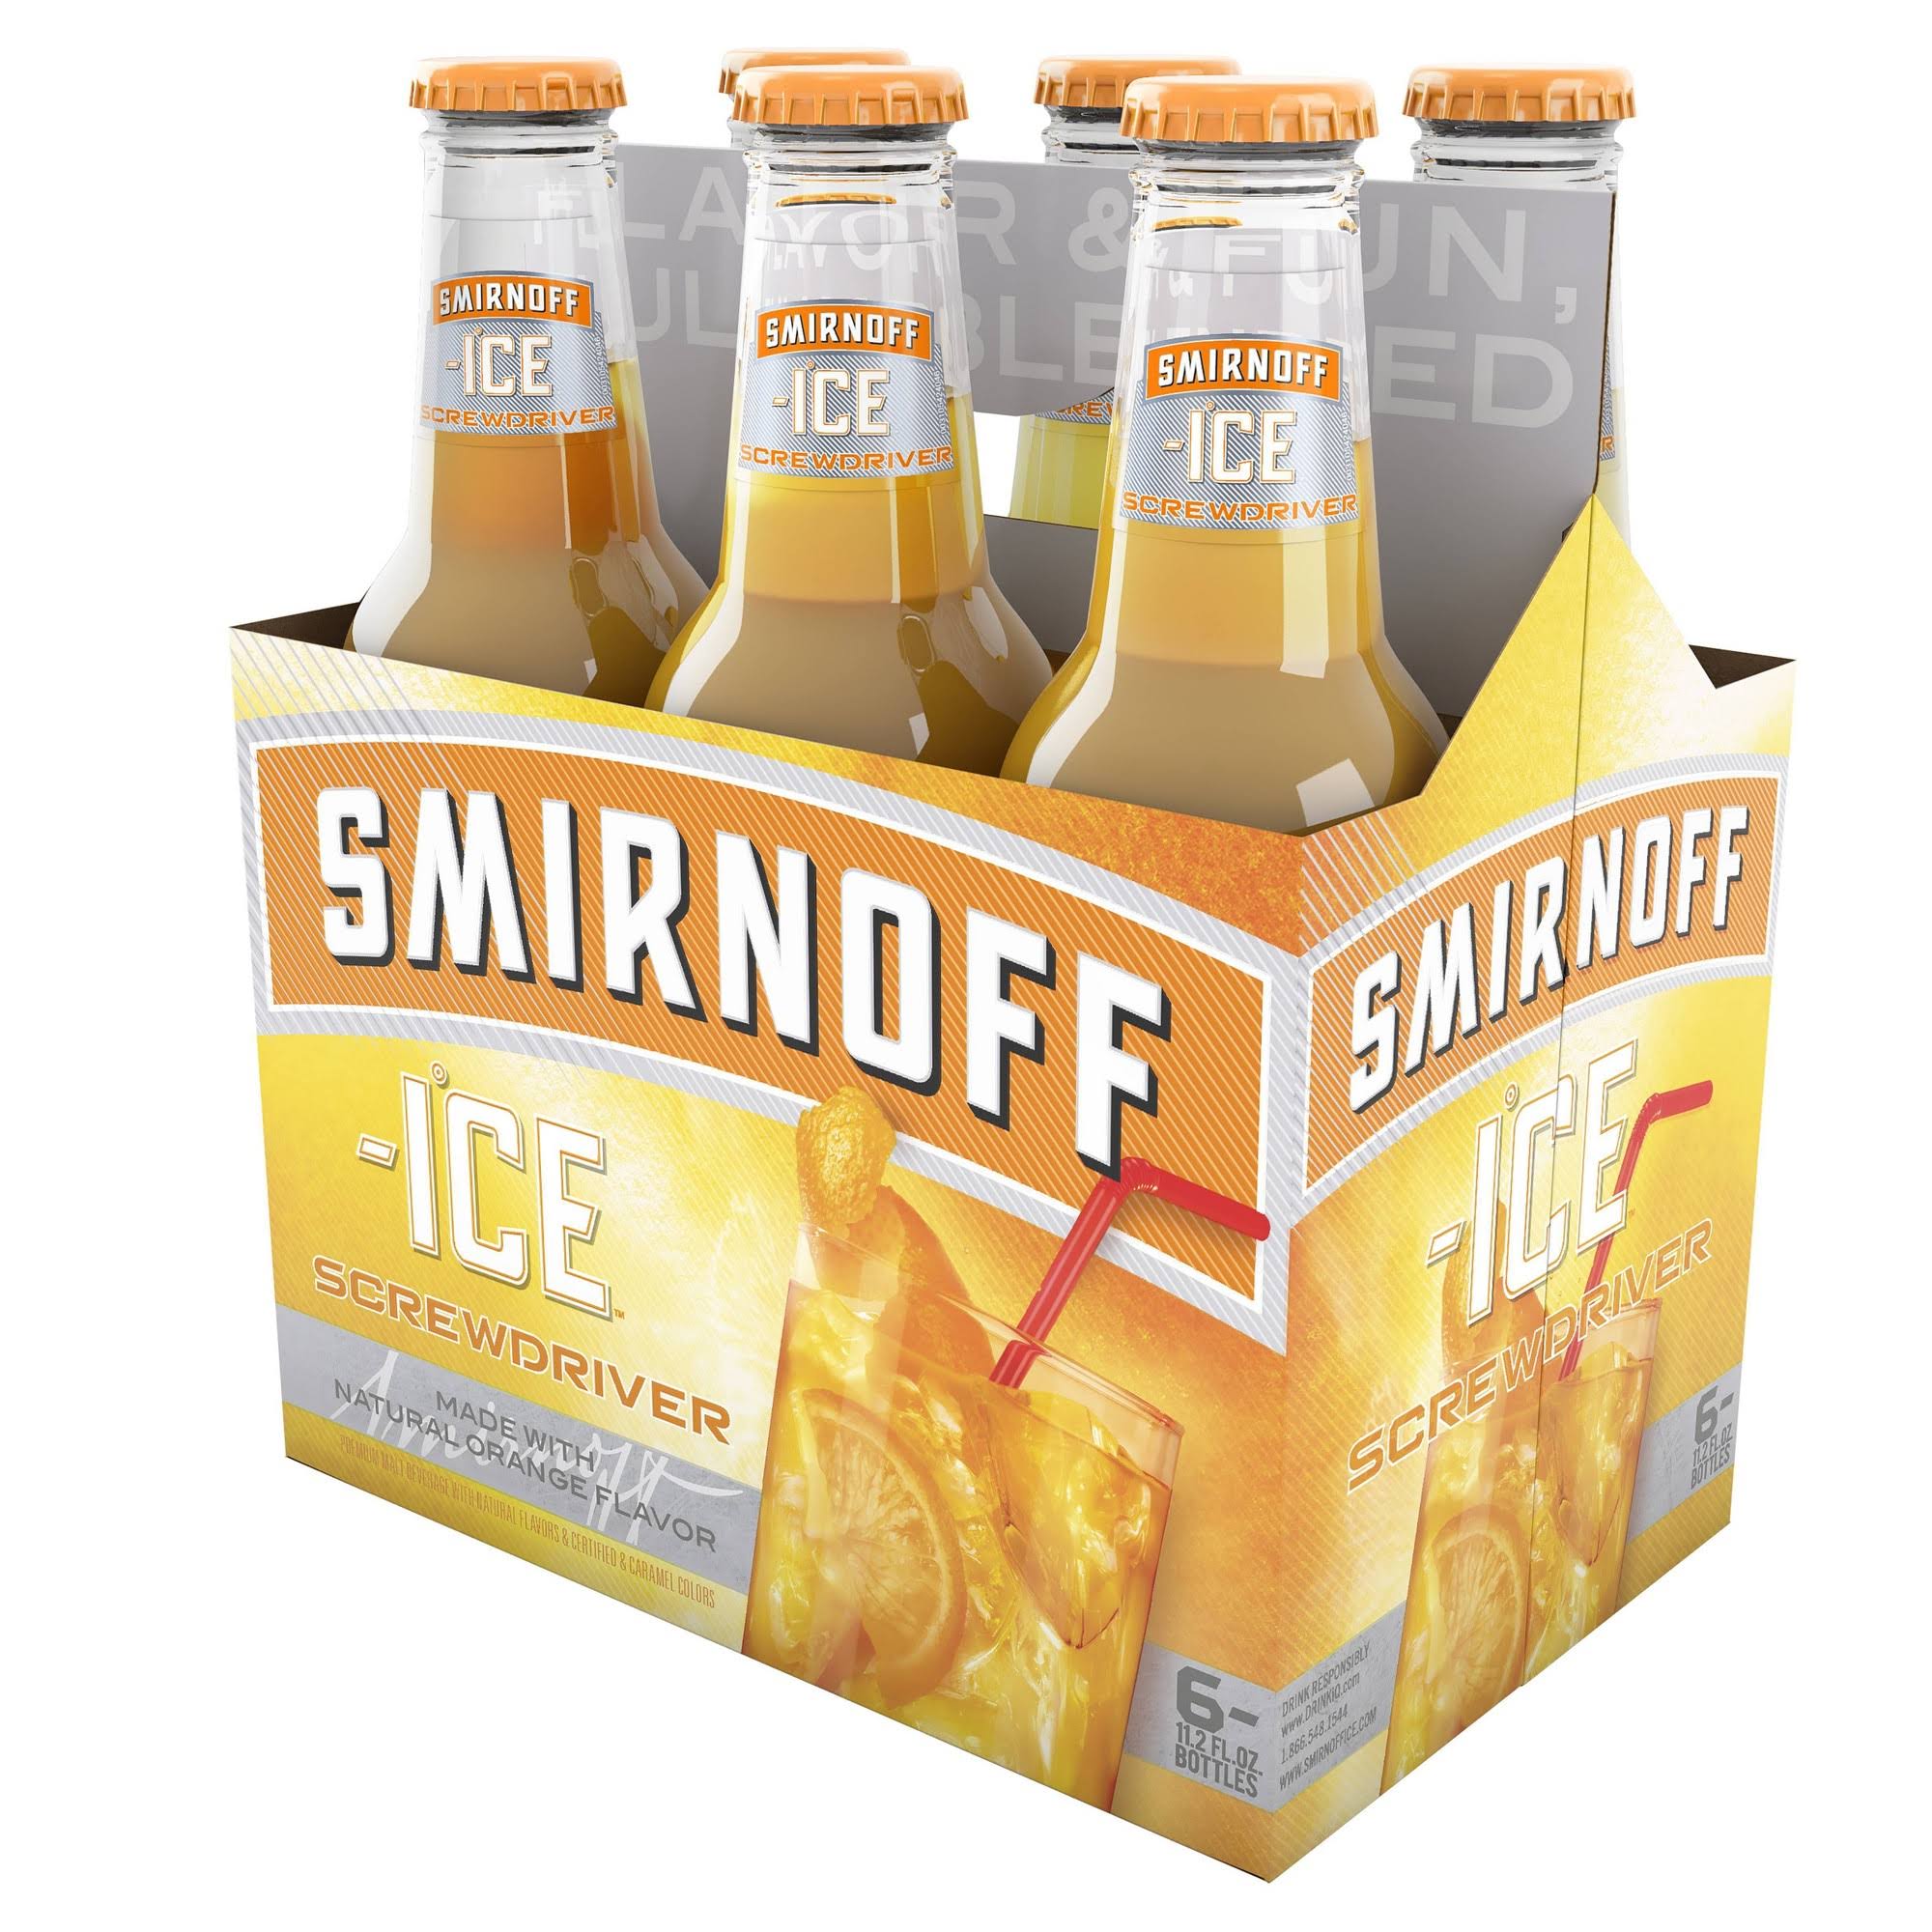 Smirnoff Ice Malt Beverage, Screwdriver - 6 pack, 11.2 fl oz bottles